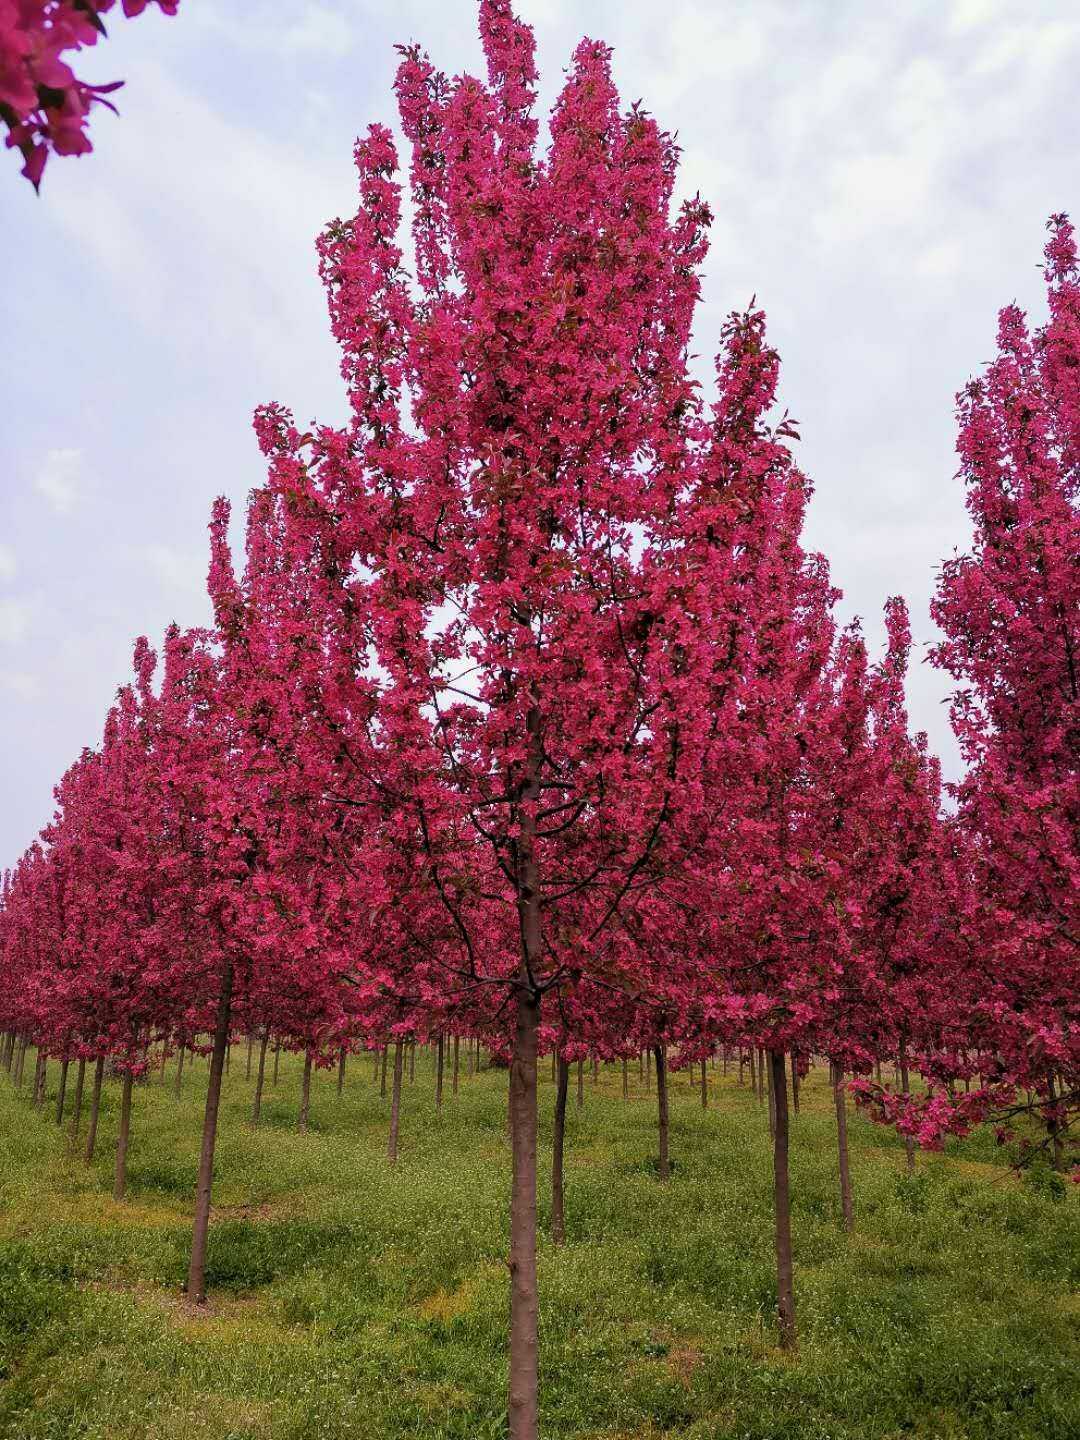 冬红海棠树图片